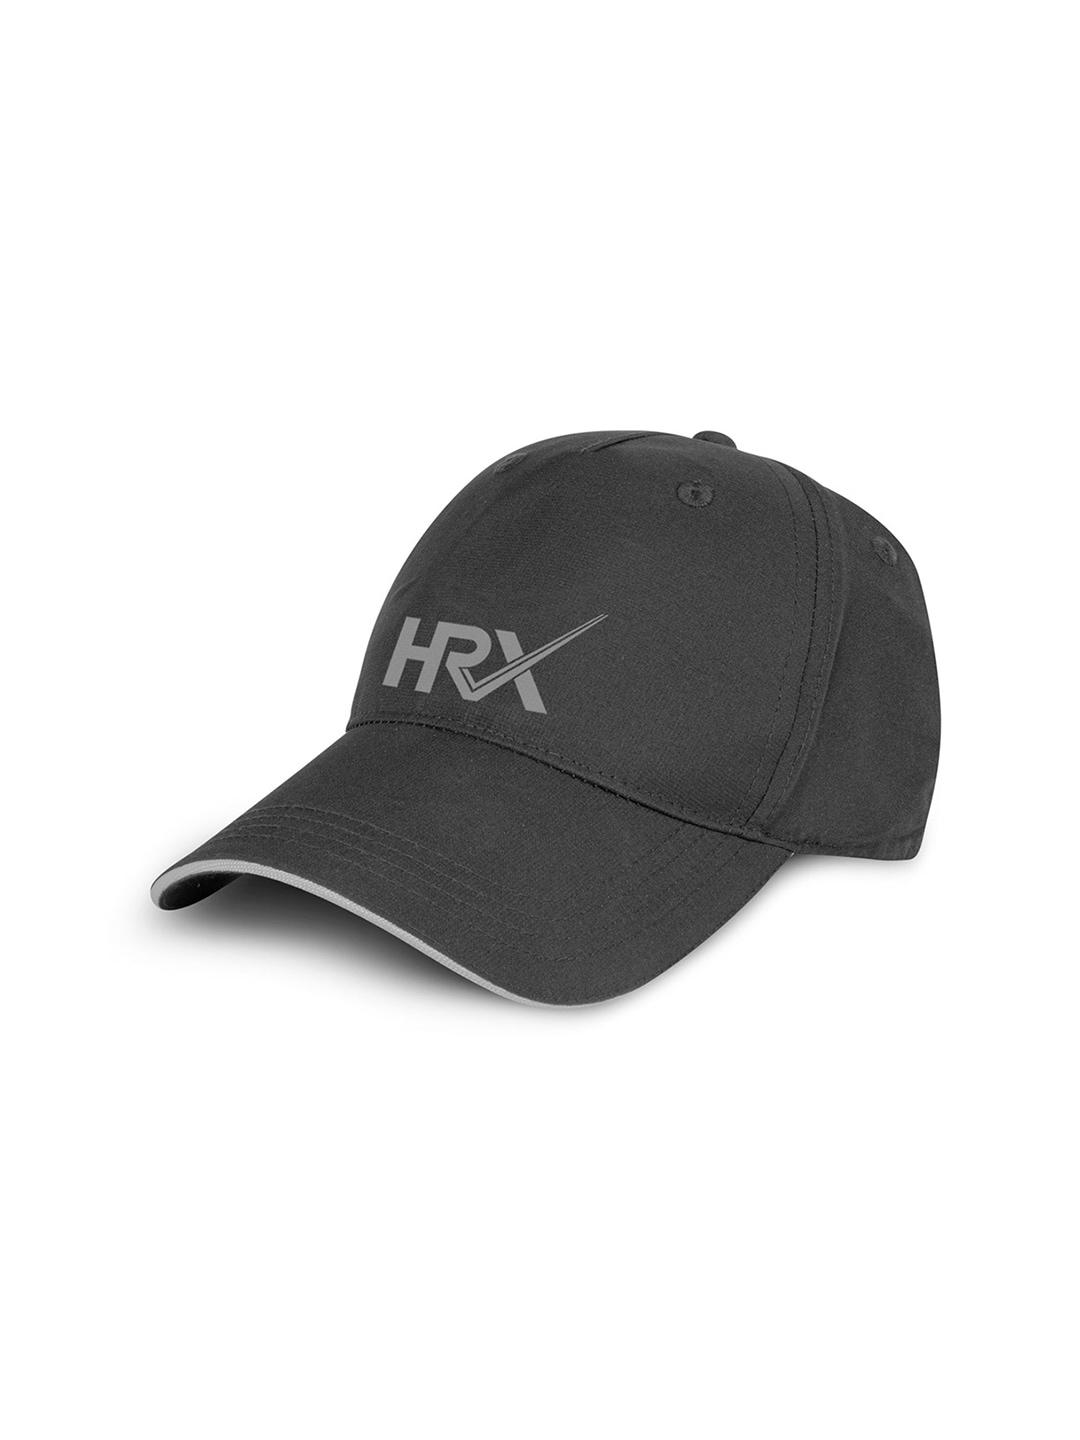 hrx by hrithik roshan unisex embroidered baseball cap